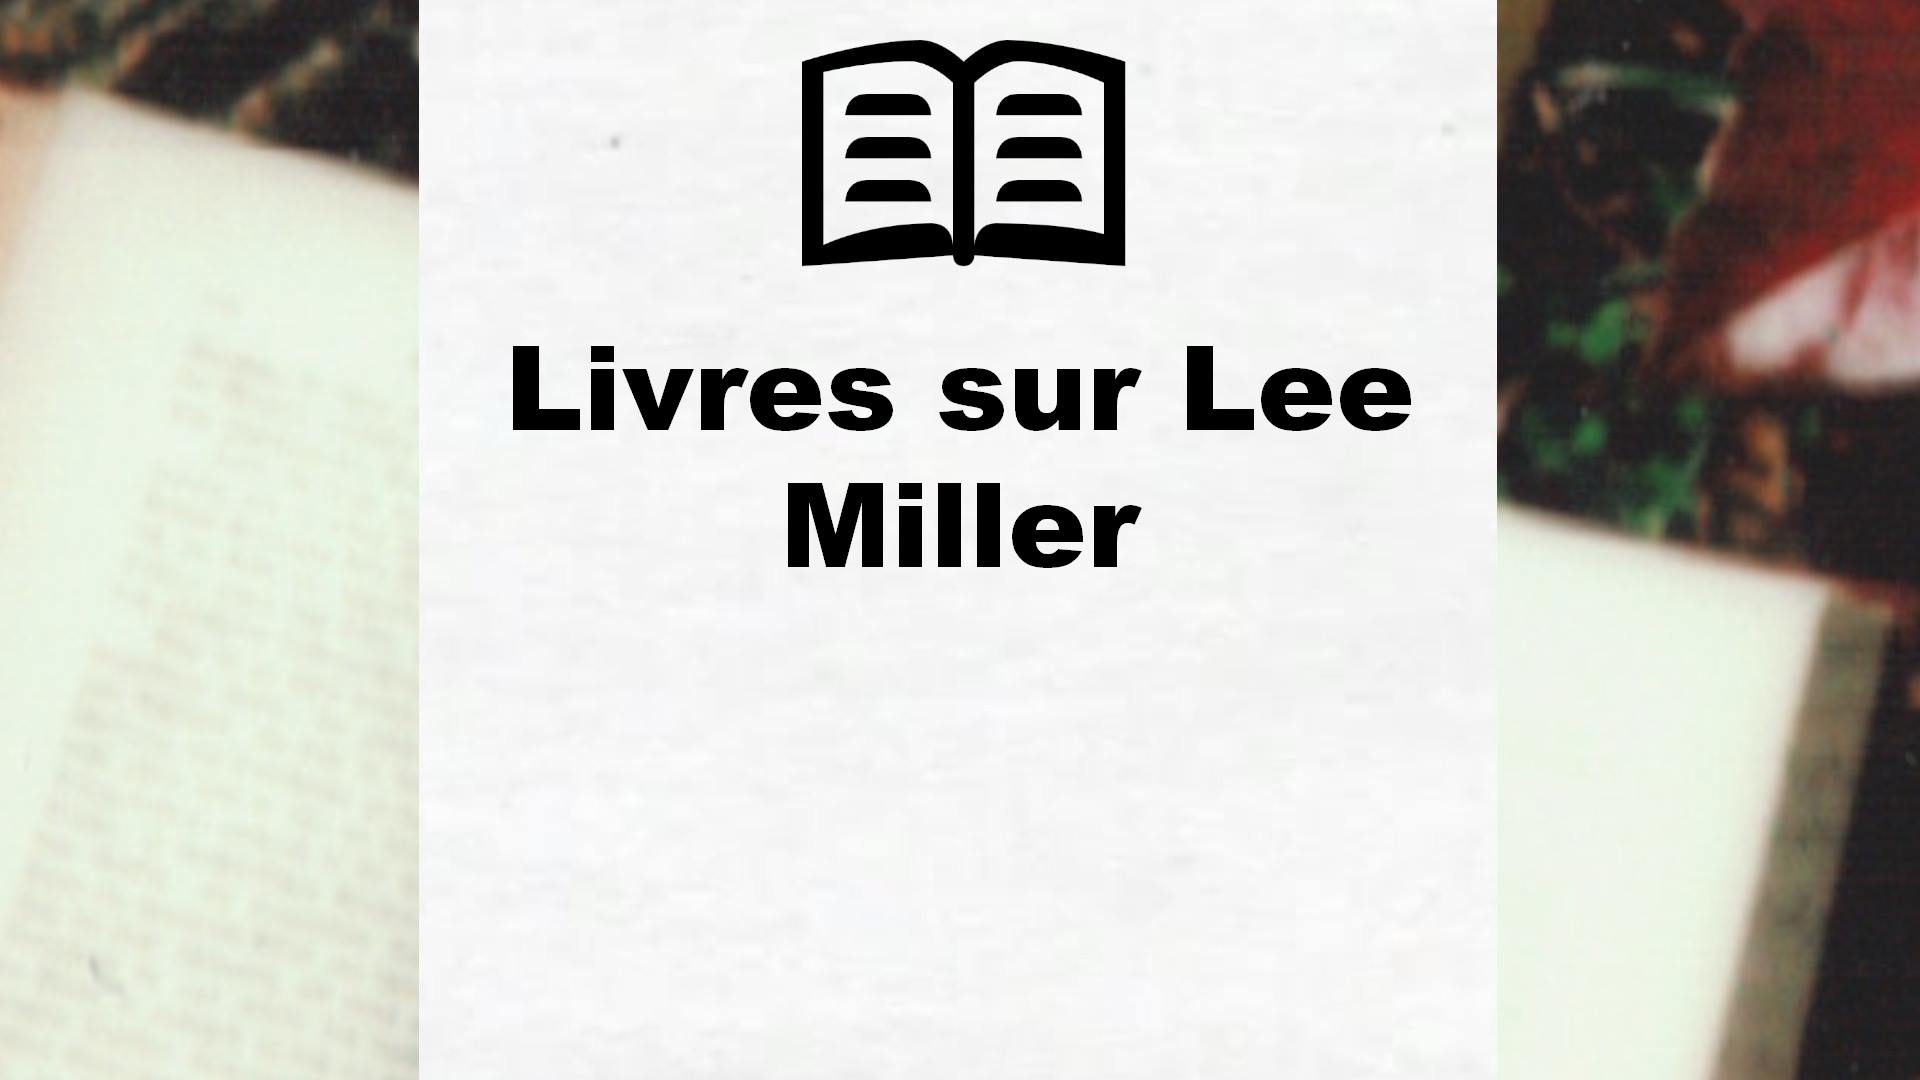 Livres sur Lee Miller